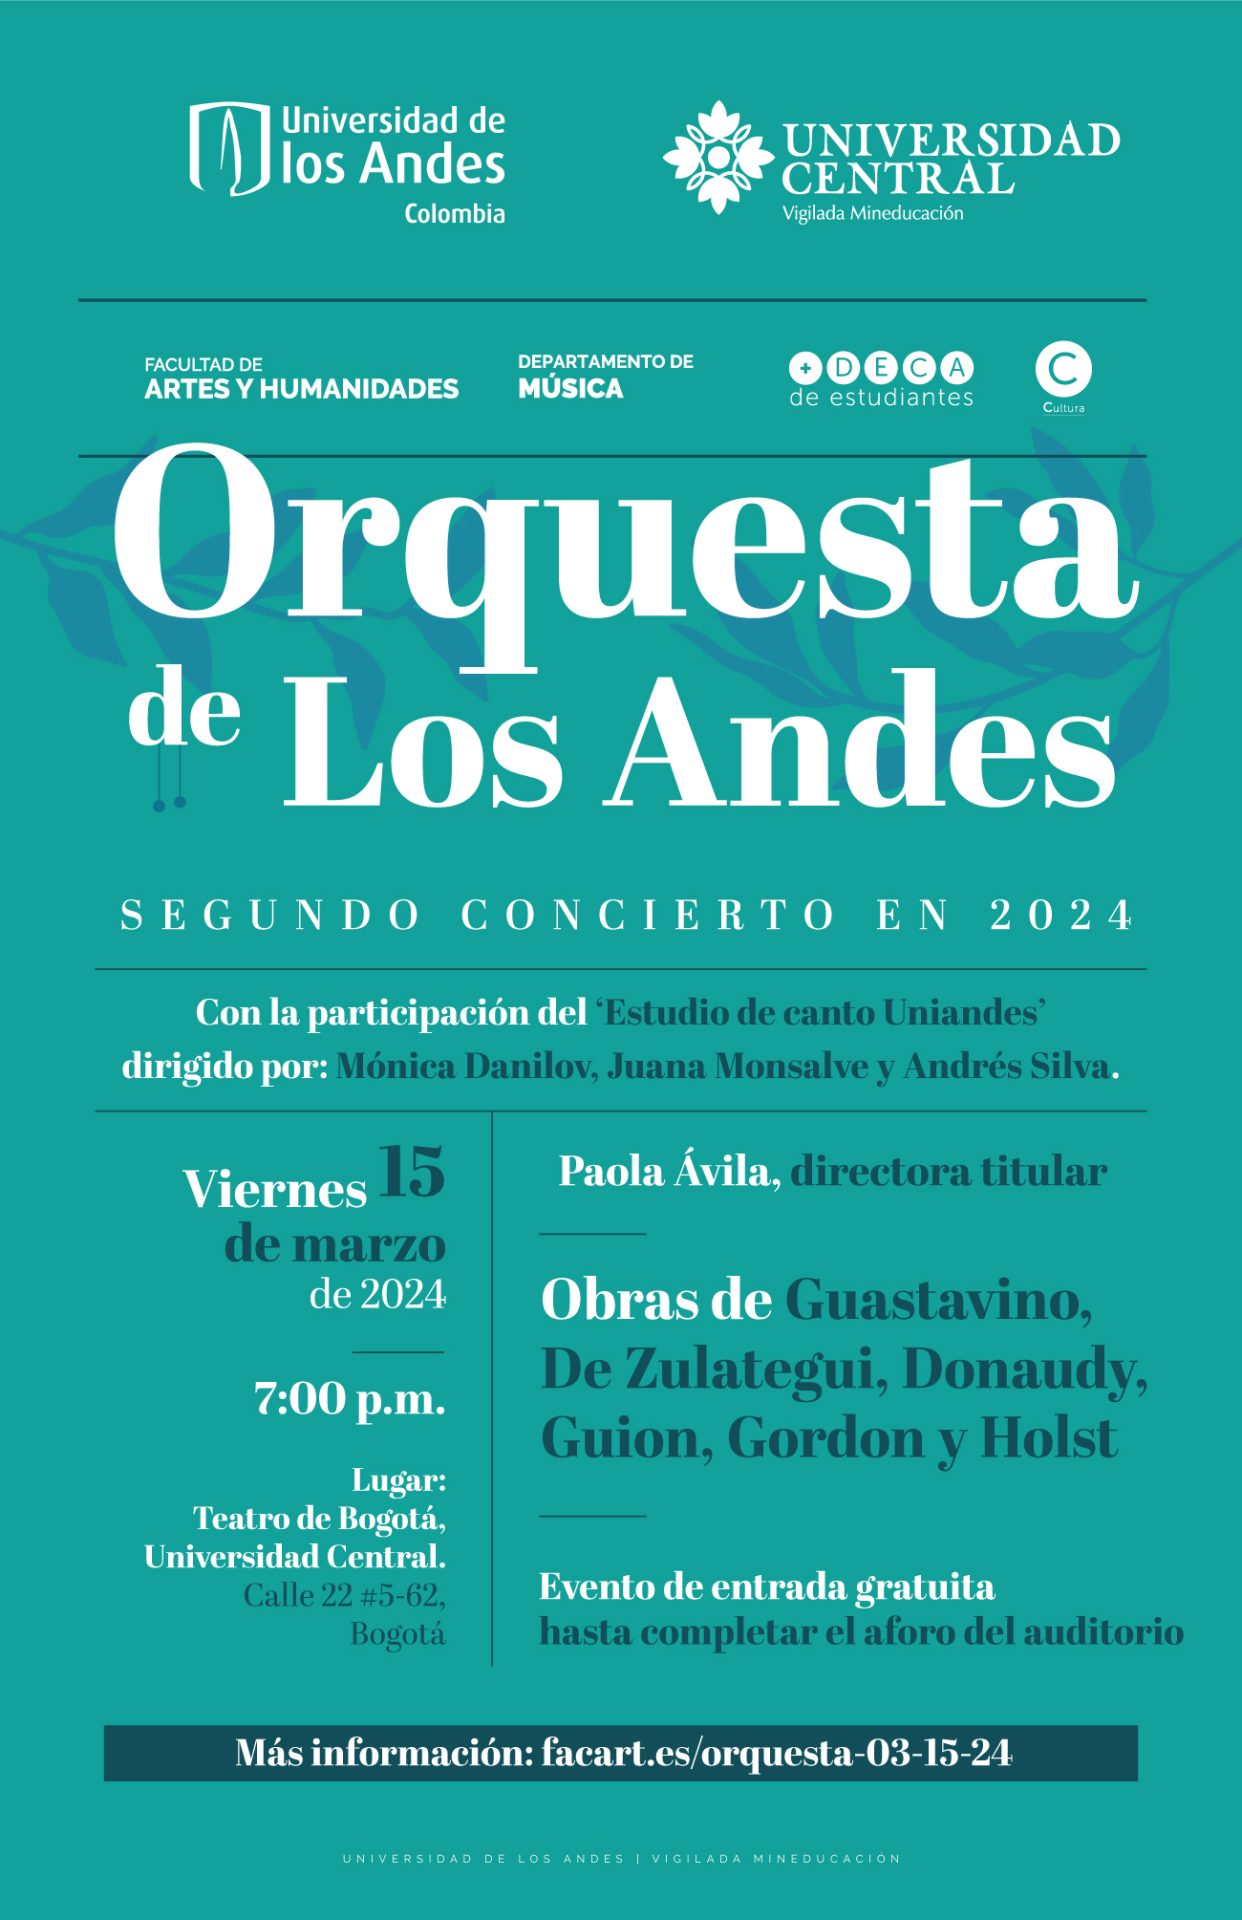 Viernes 15 de marzo de 2024 a las 7:00 p.m. en el Teatro de Bogotá, Universidad Central